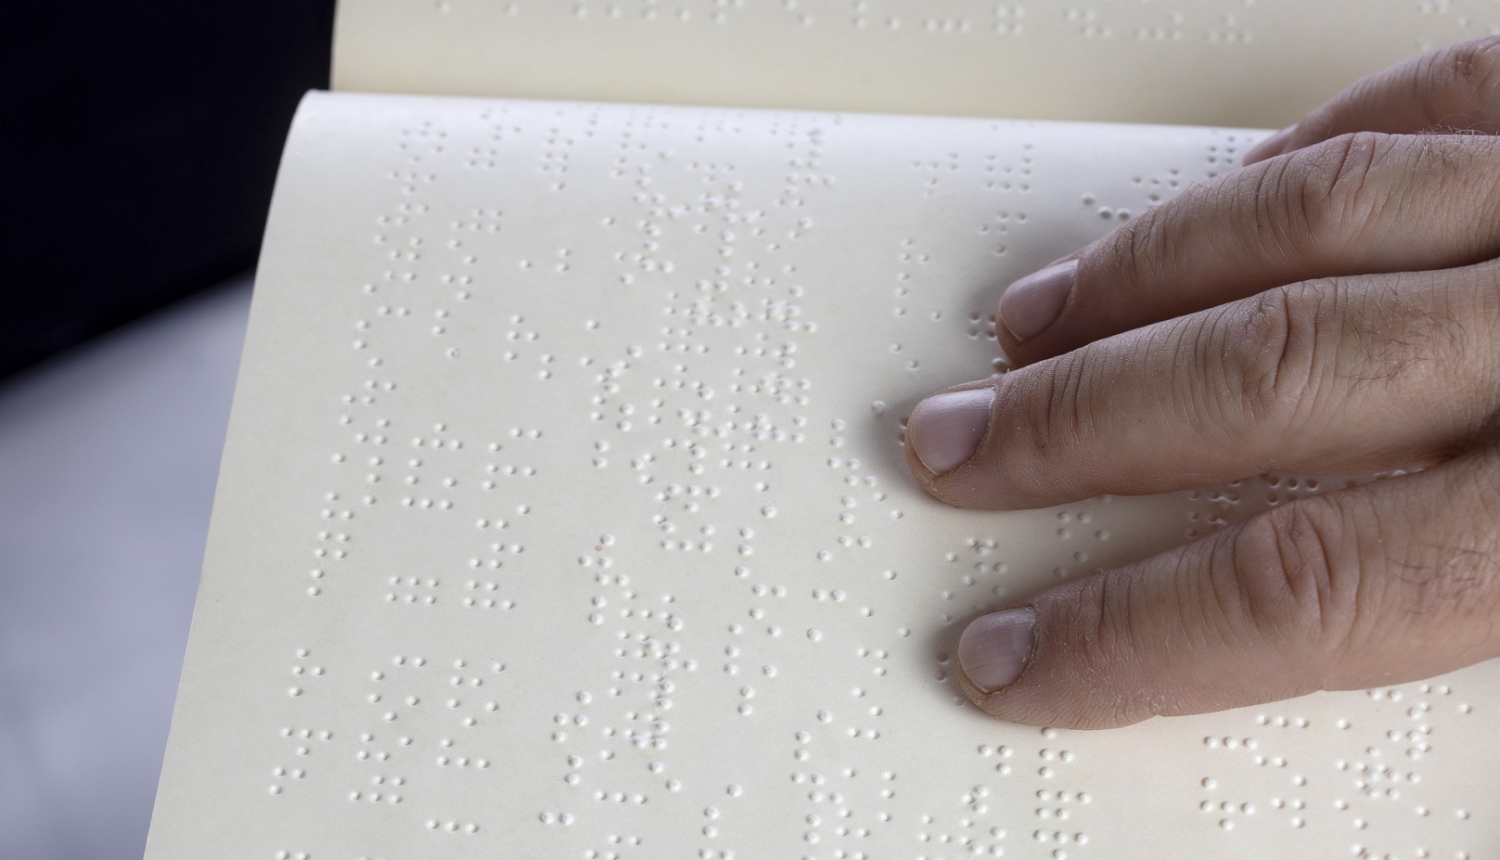 Braila rakstā veidota grāmata un tās lasītājs